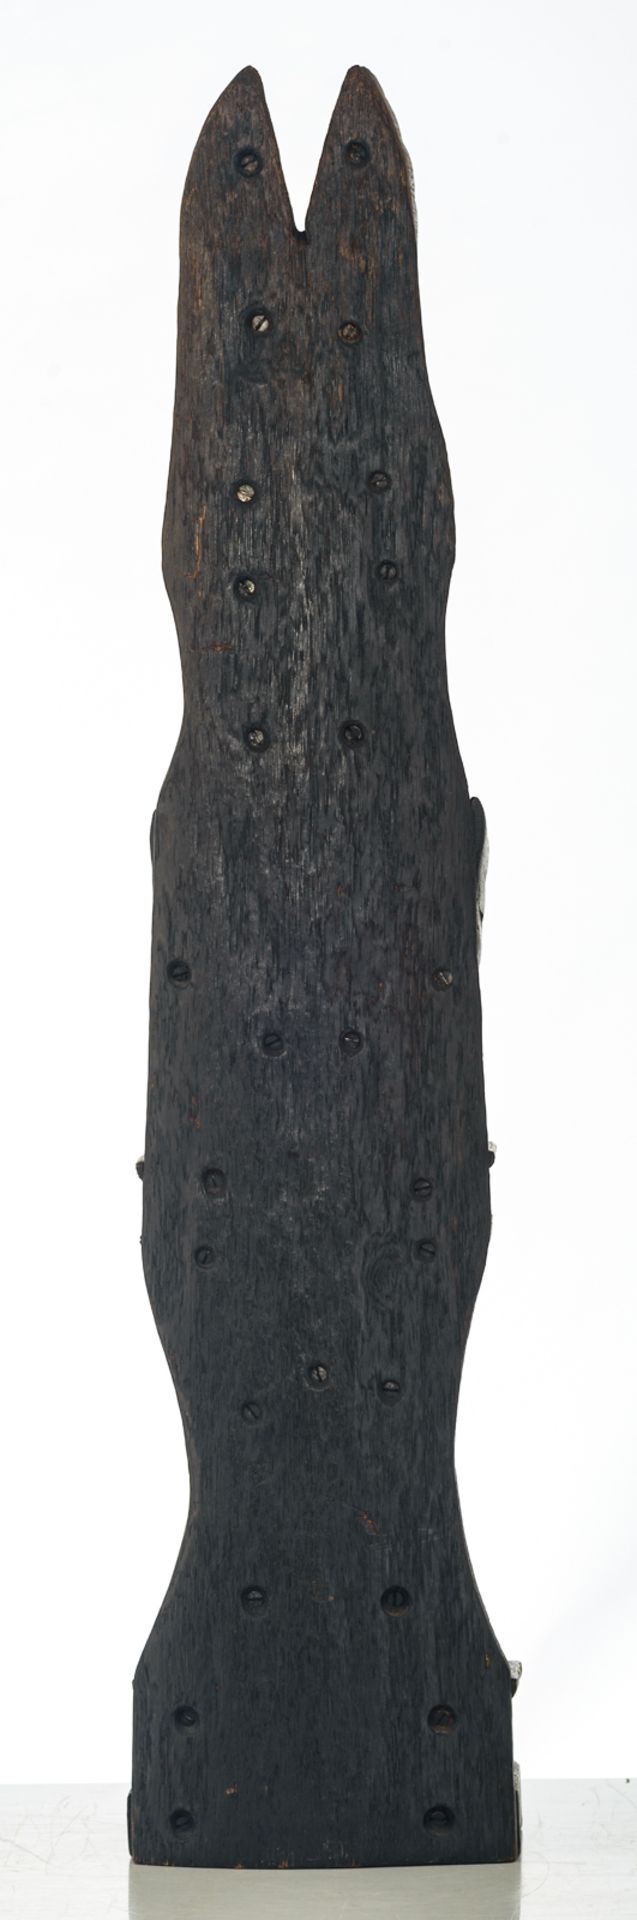 De Maeyer J., 'Totem', wood construction, H 93 cm - Bild 4 aus 6